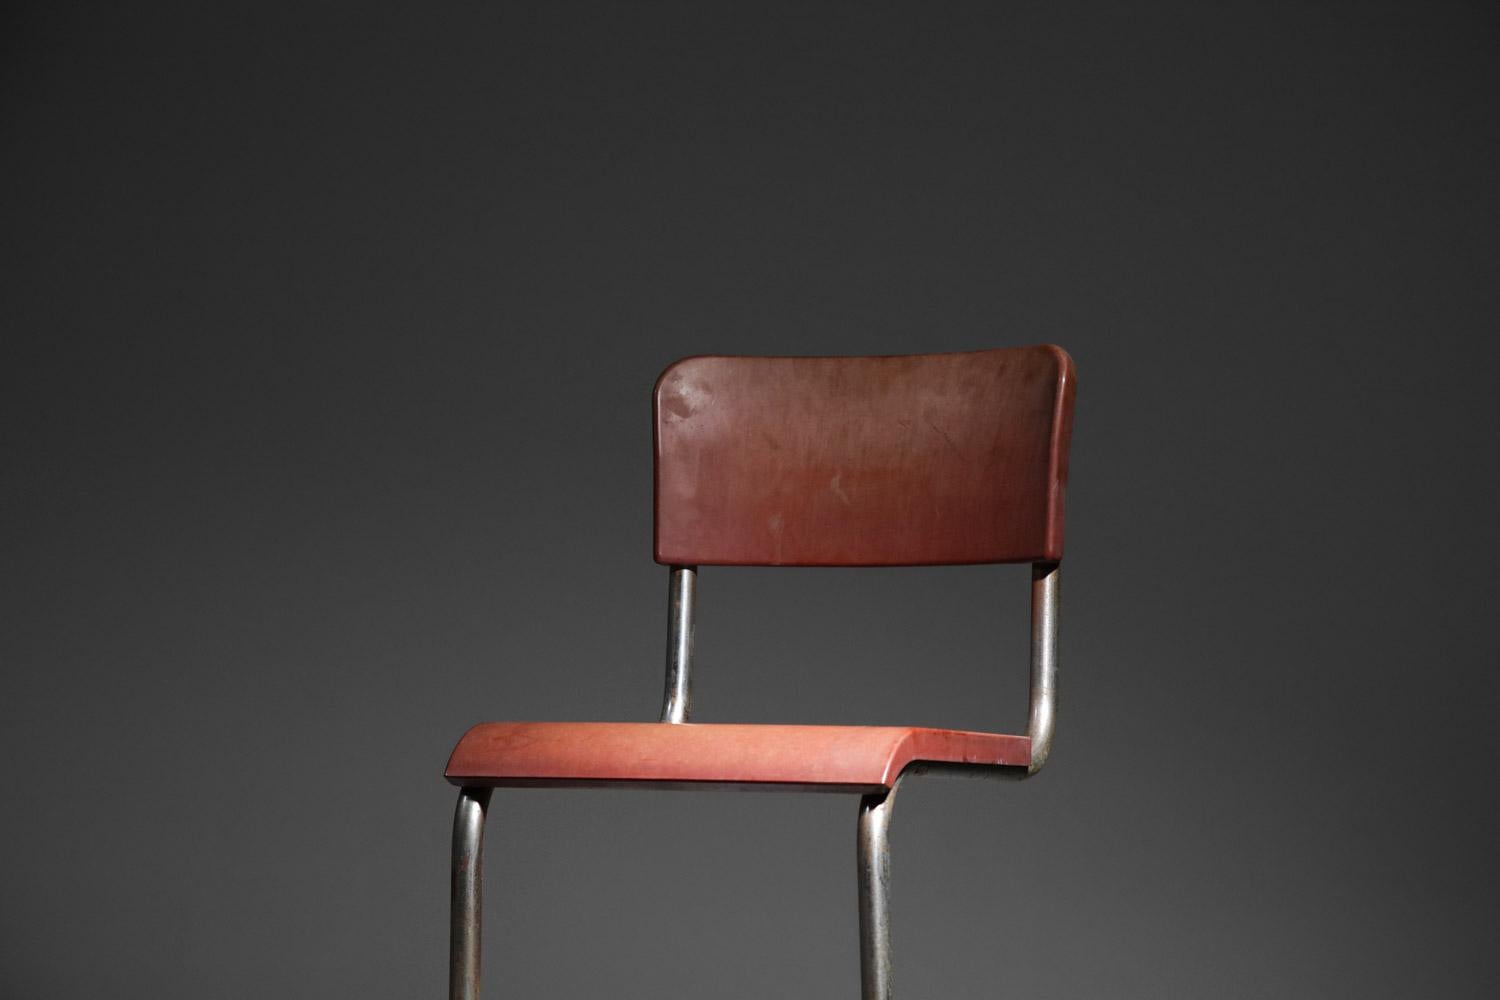 Bauhaus chrome tube bakelite chair in style of Emile Guillot art deco modernist breuer For Sale